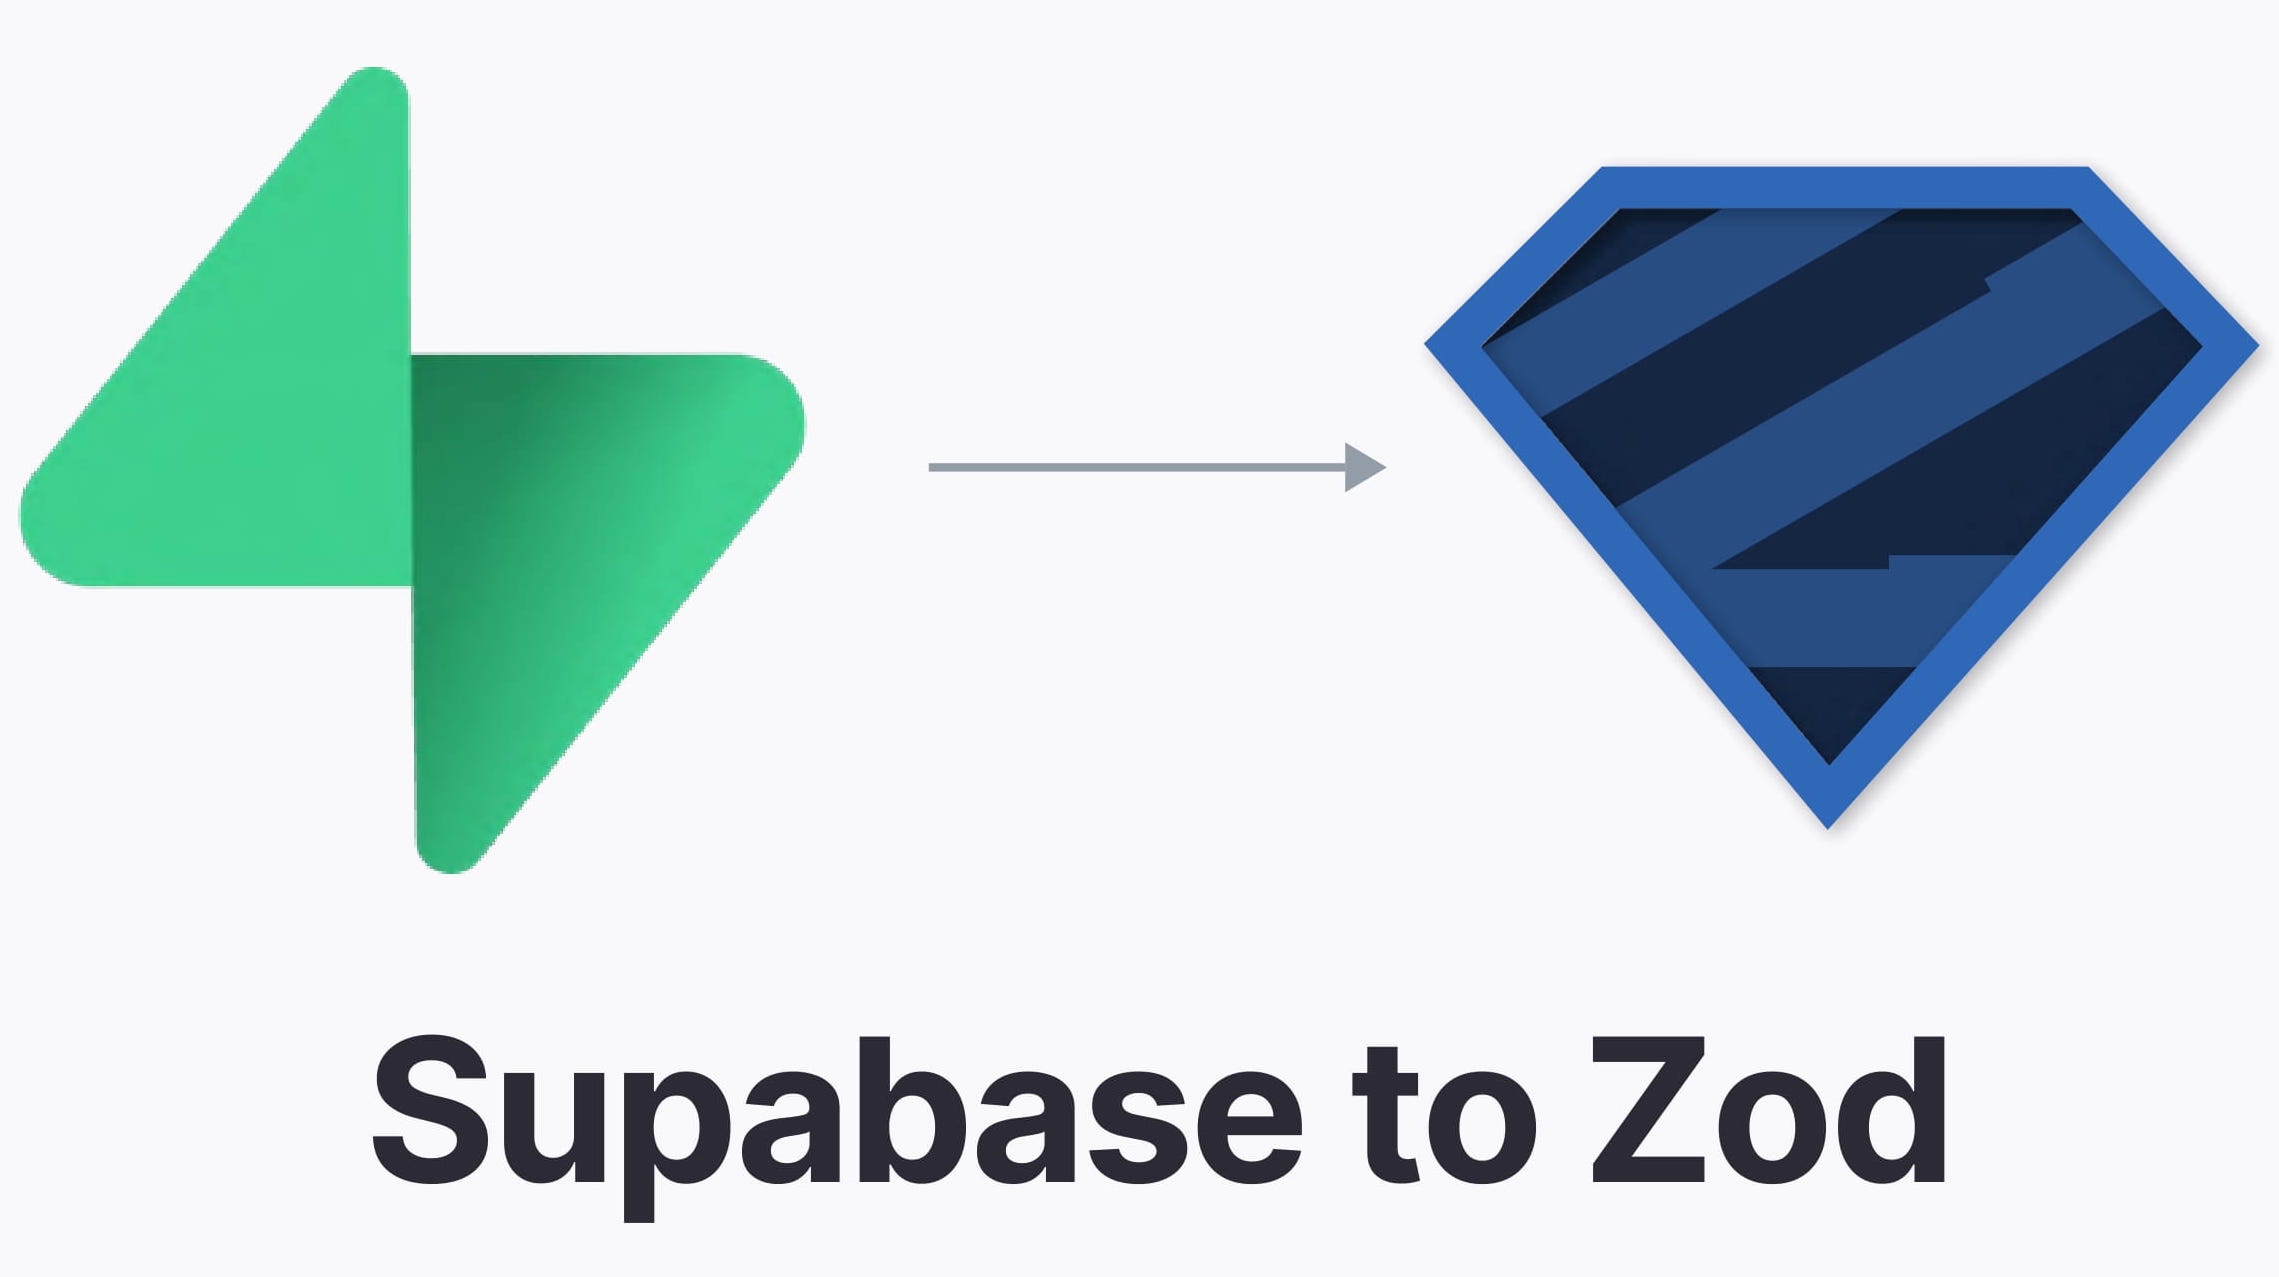 supabase-to-zod-logo.jpg